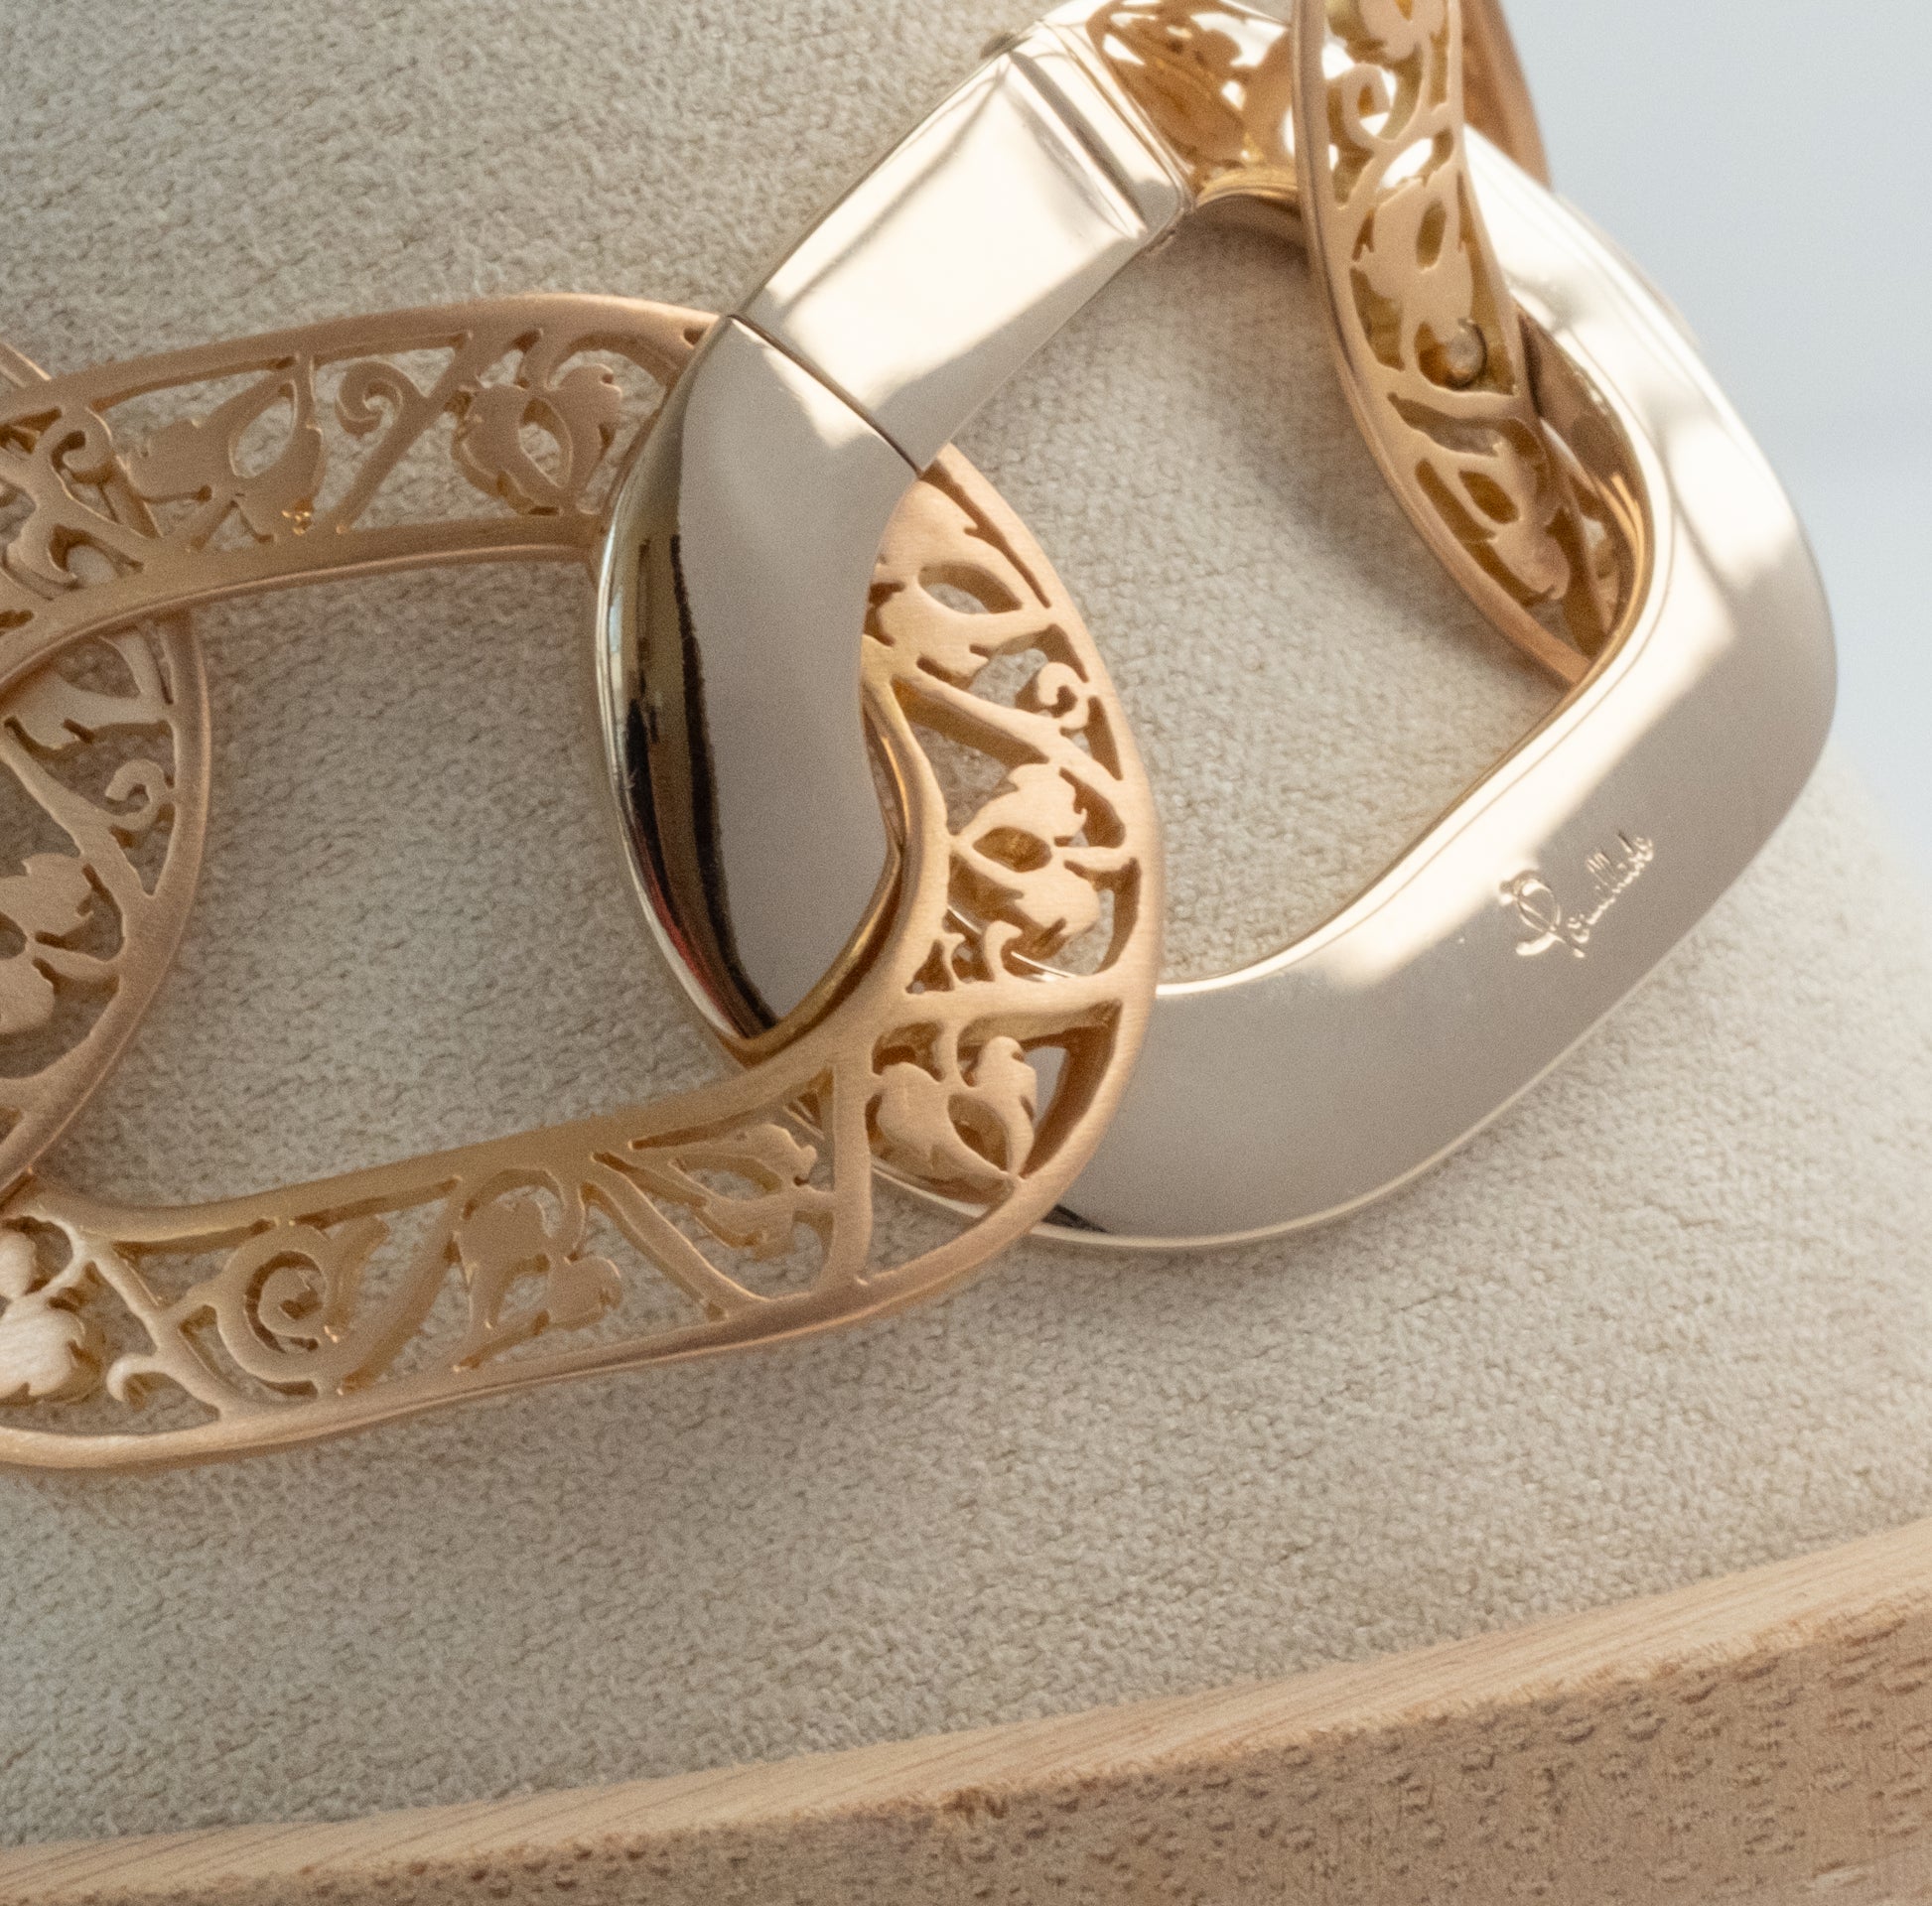 Pomellato 18K Gold Oval Arabesque Link Bracelet - Premium Bracelet from All The Best Vintage - Just $7695! Shop now at All The Best Vintage